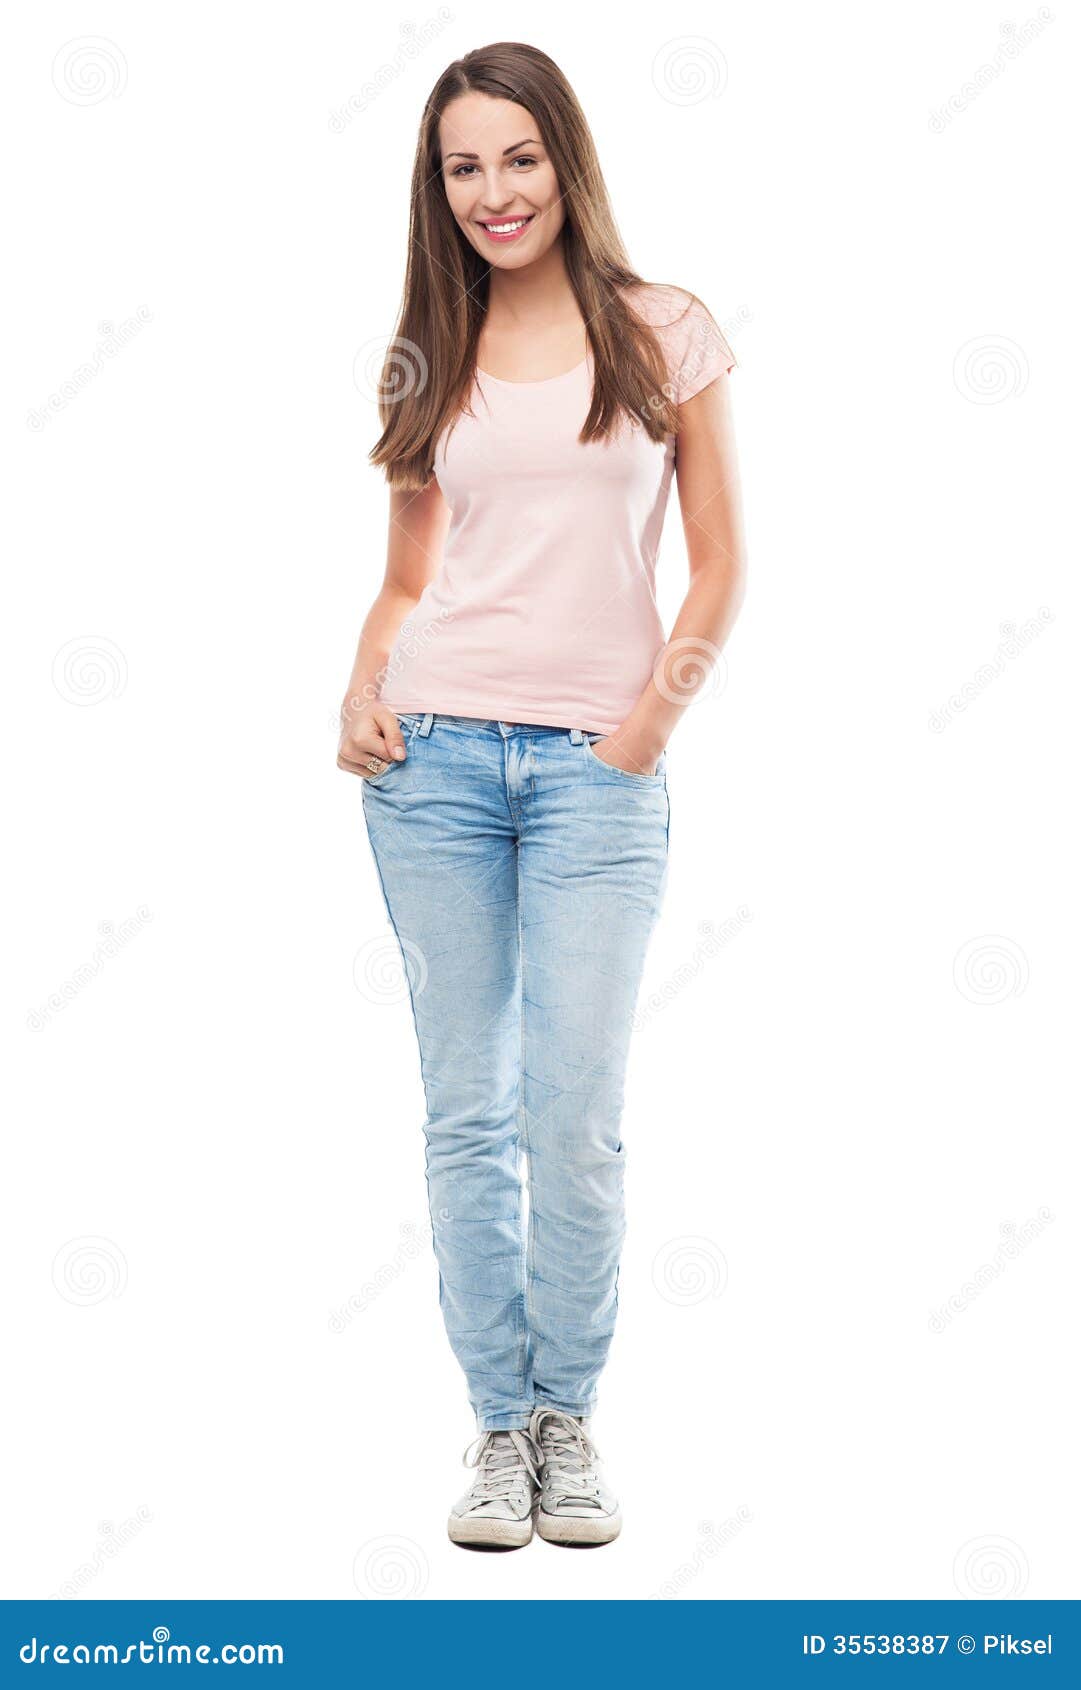 Corpo Completo De Uma Jovem Mulher Imagem de Stock - Imagem de